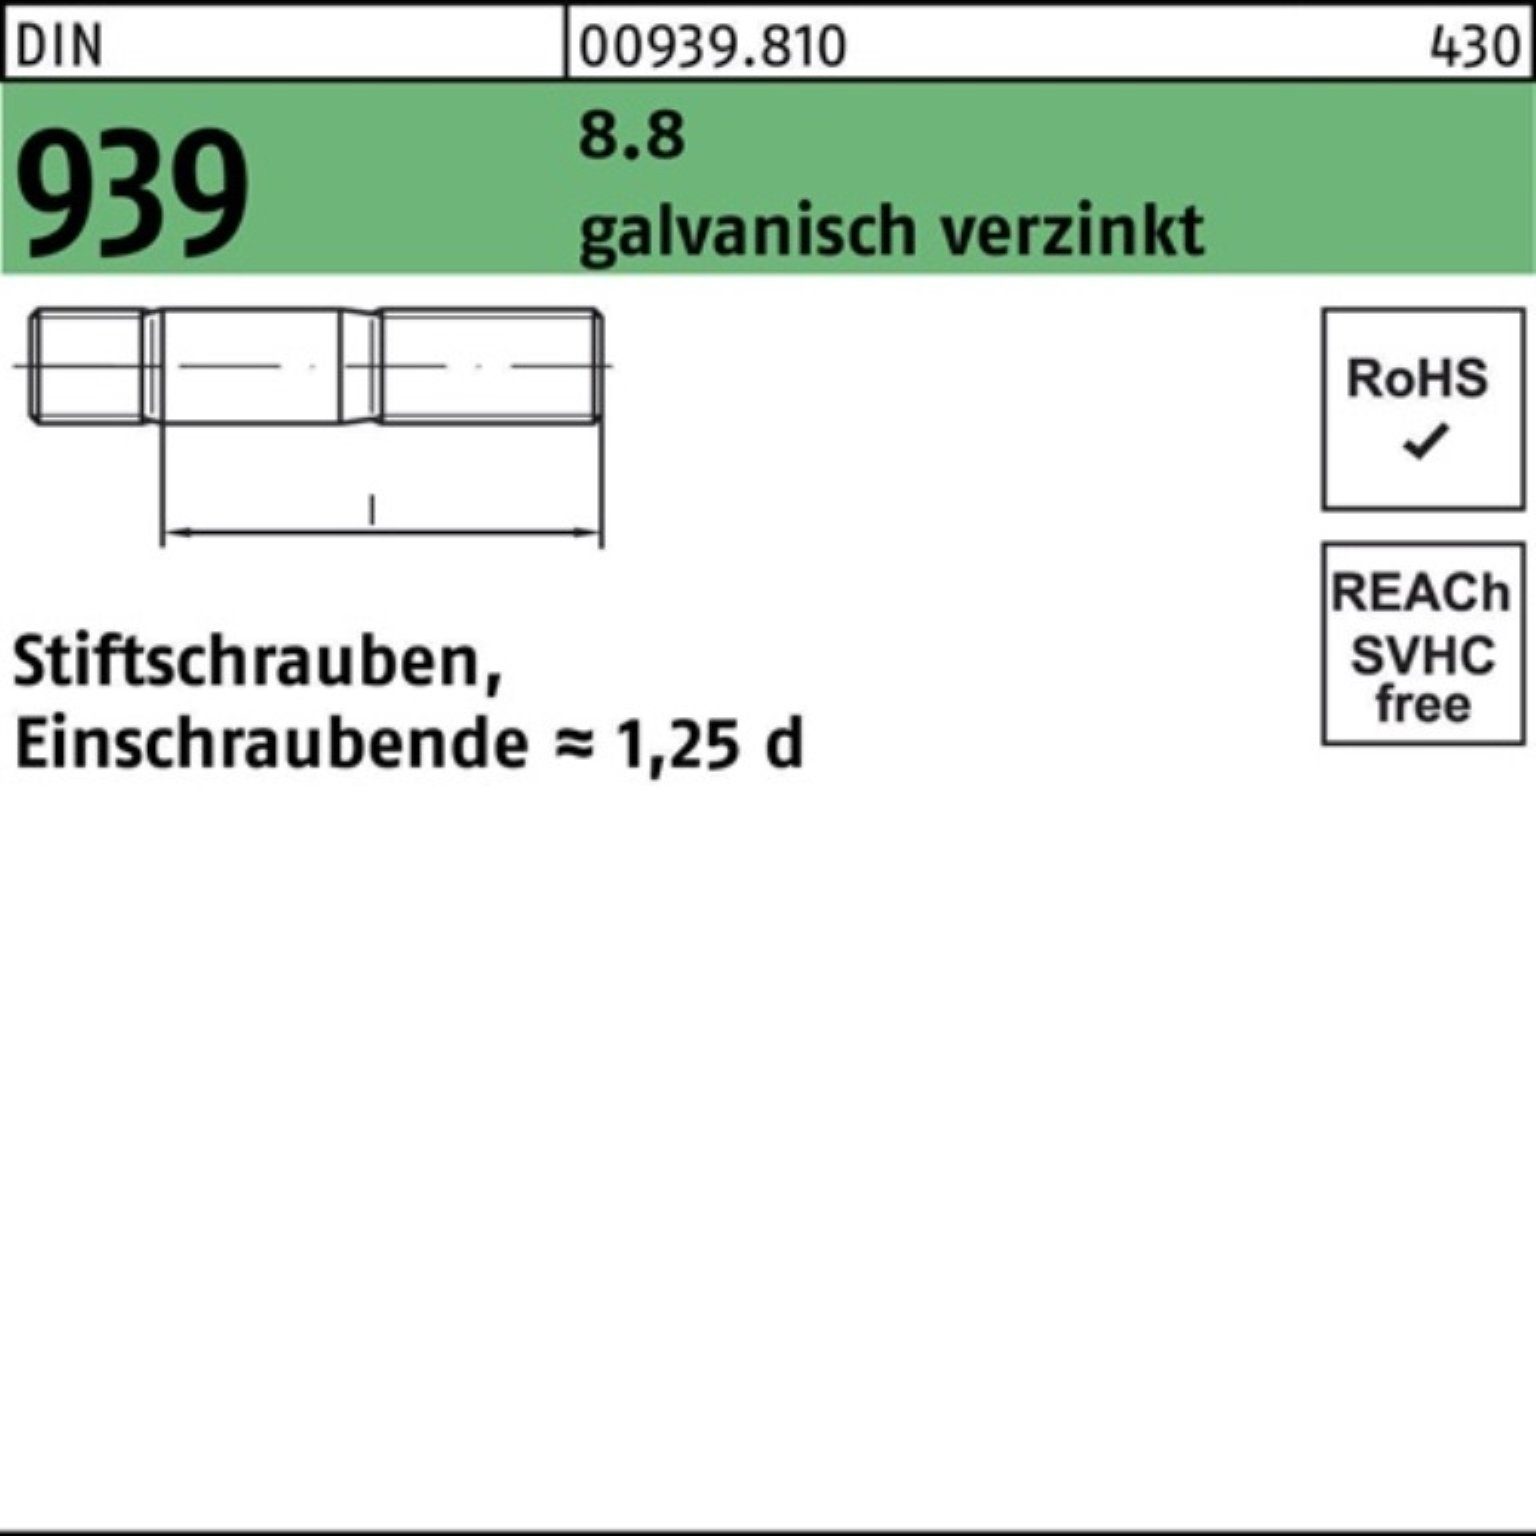 Reyher Stiftschraube 100er Pack DIN Stiftschraube 8.8 939 galv.verz. Einschraubende M20x110